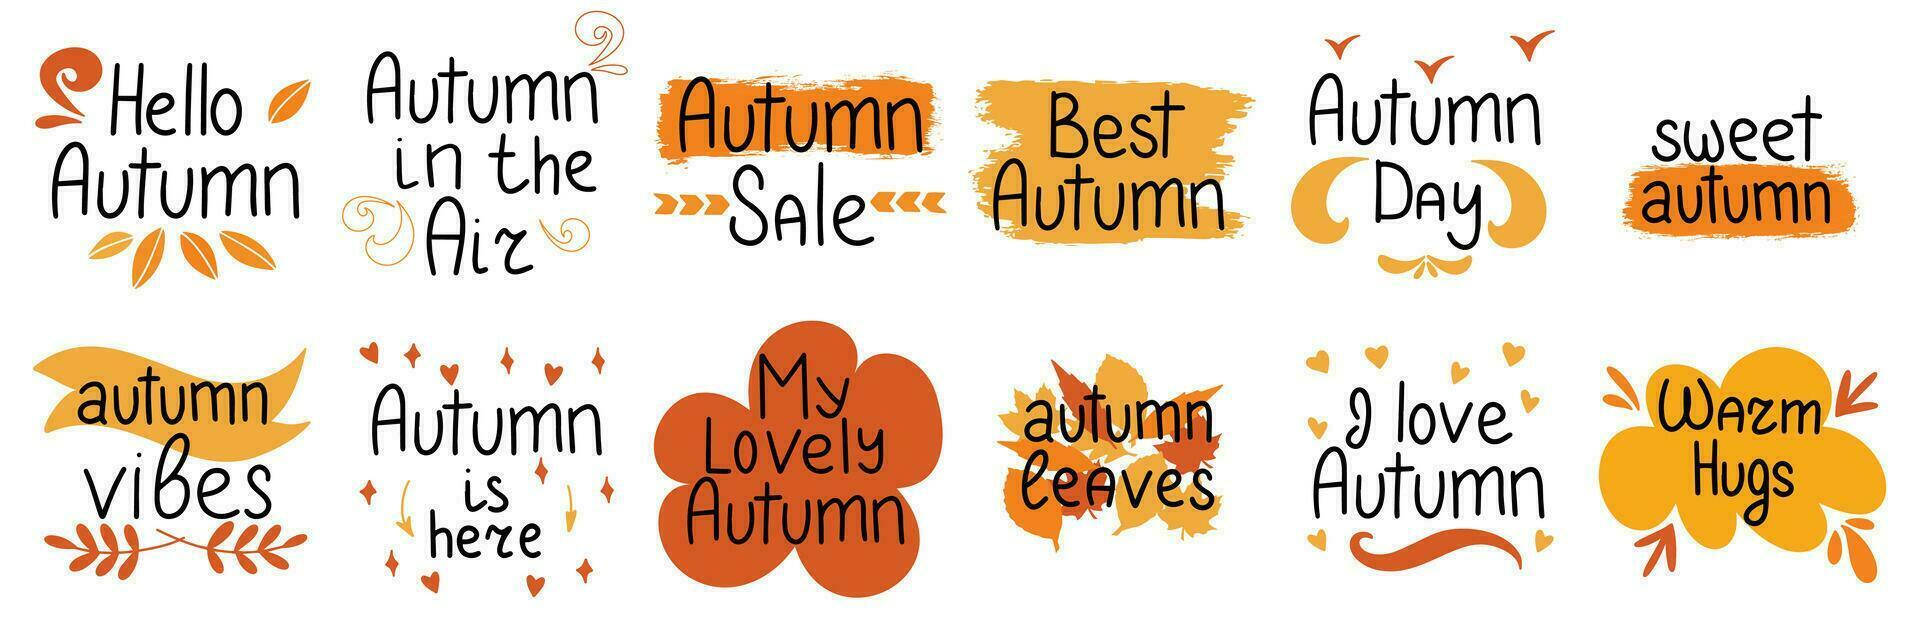 herfst in de lucht. herfst uitverkoop. zoet herfst. warm knuffel. herfst kort zinnen. vector illustratie.